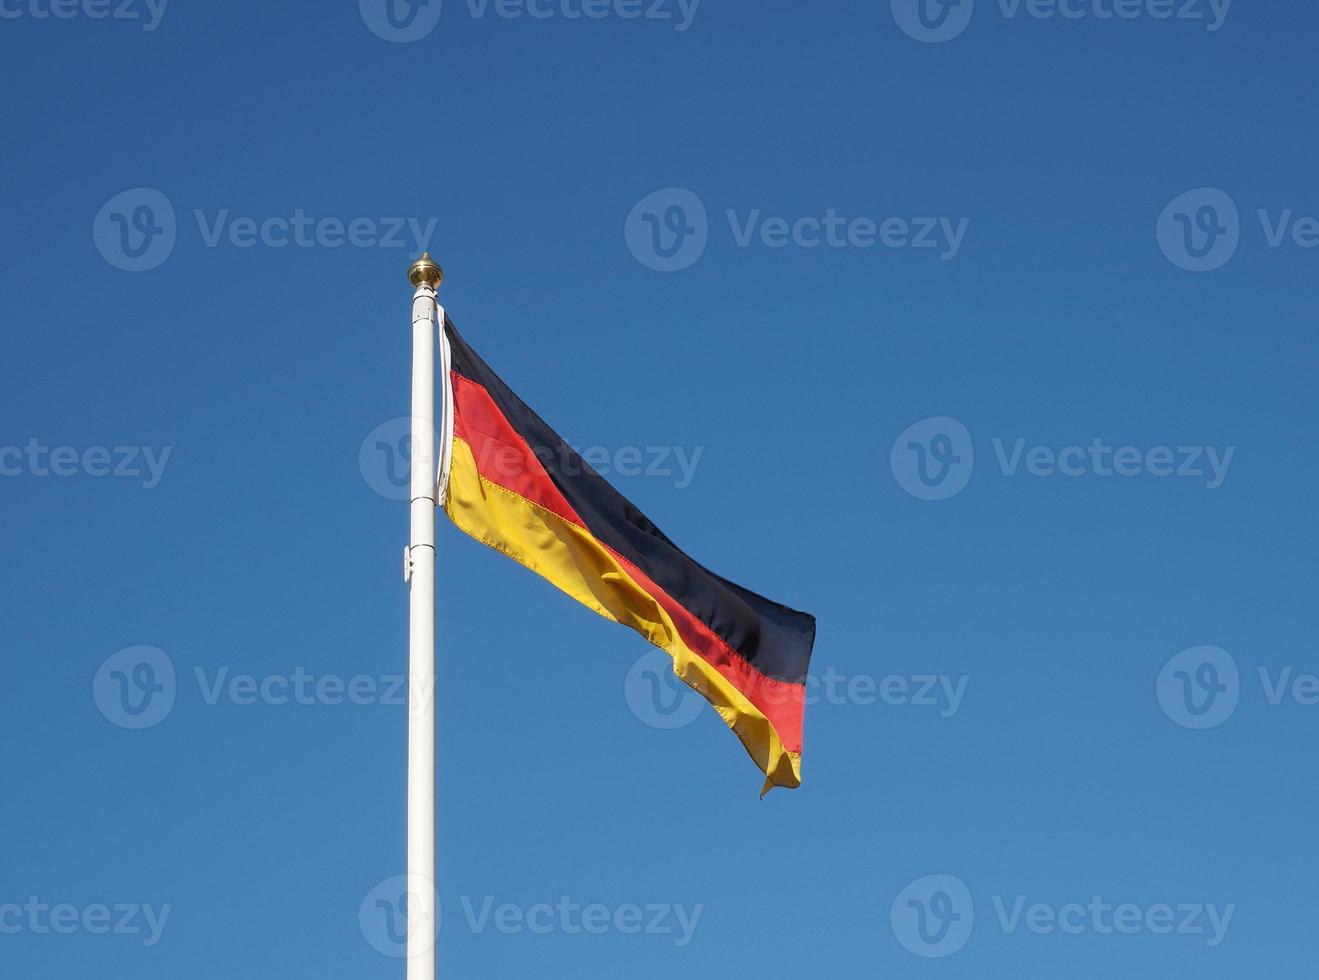 tysk tysk flagga foto